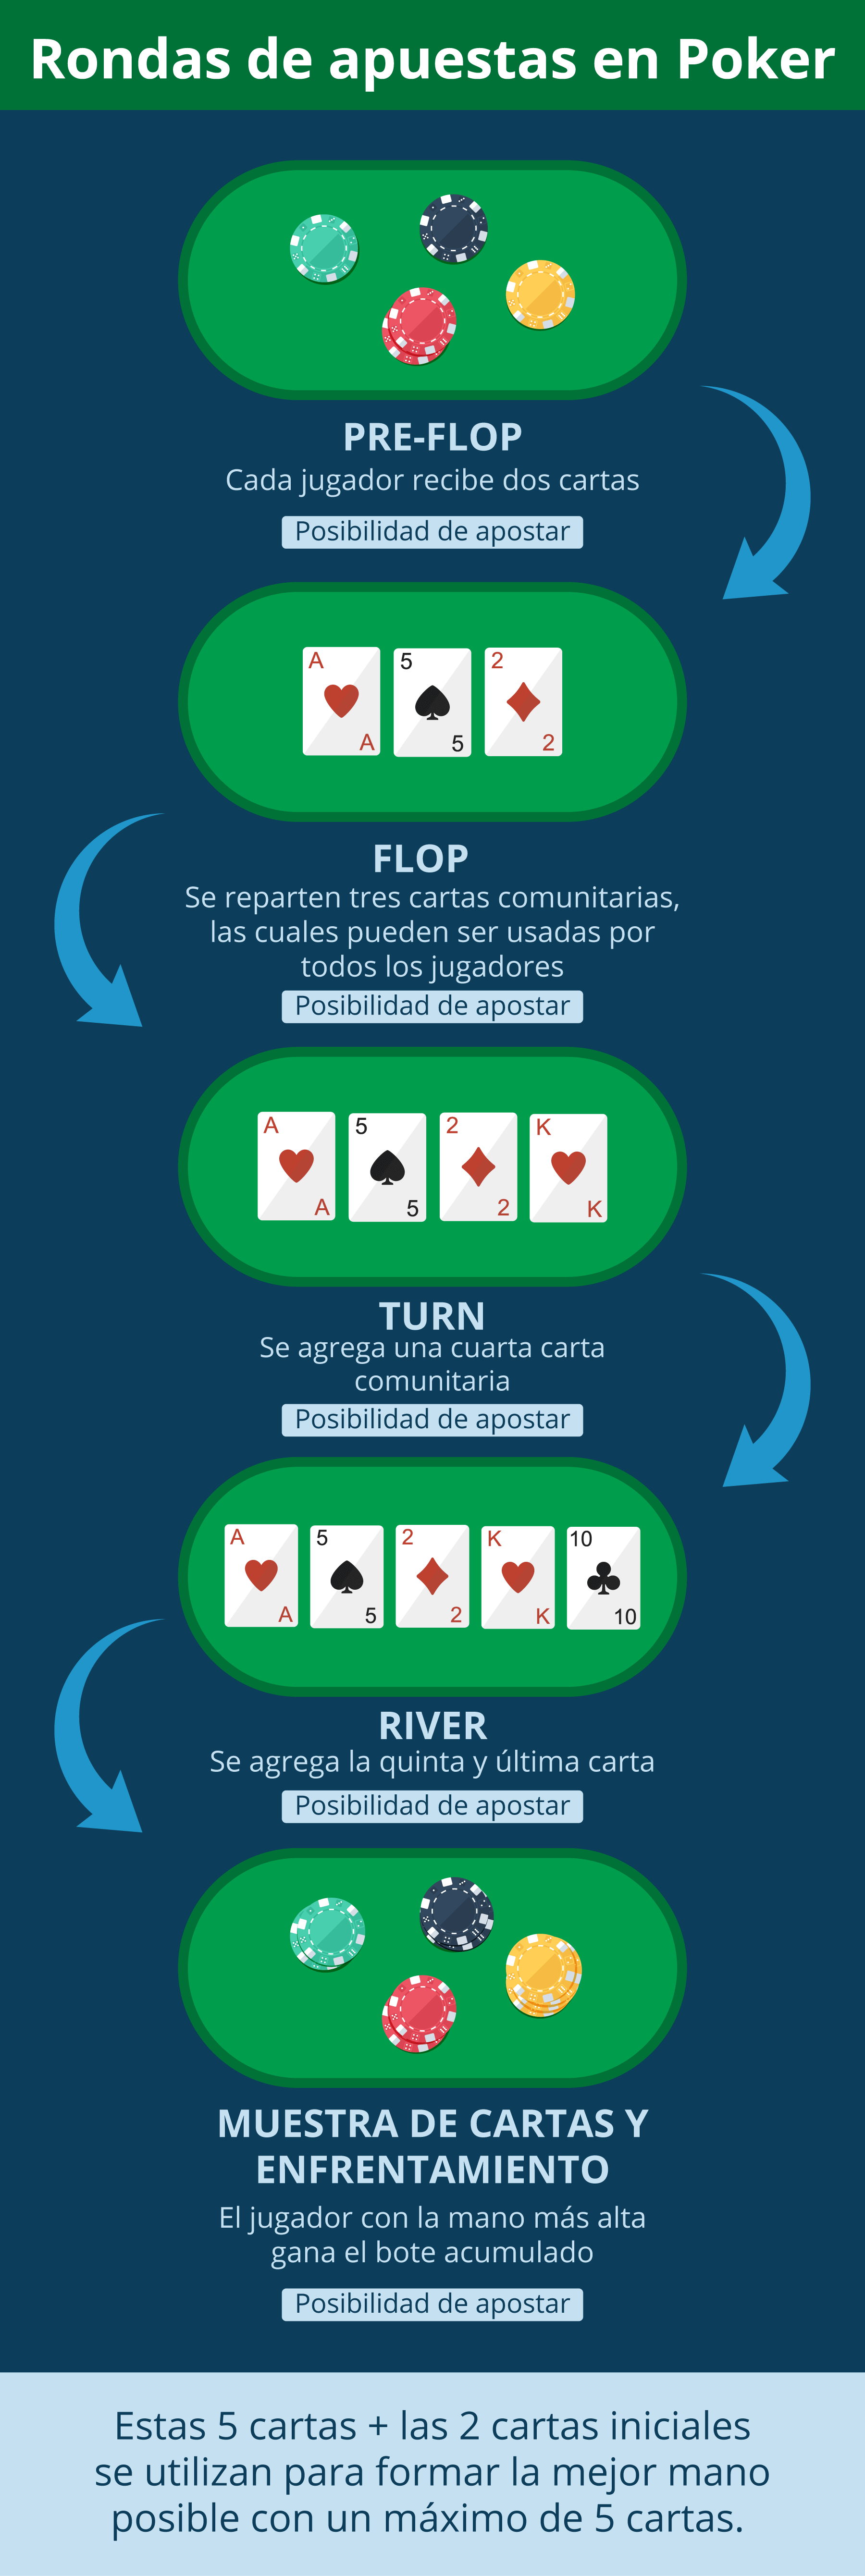 ¿Cuántas rondas de apuestas hay en el poker